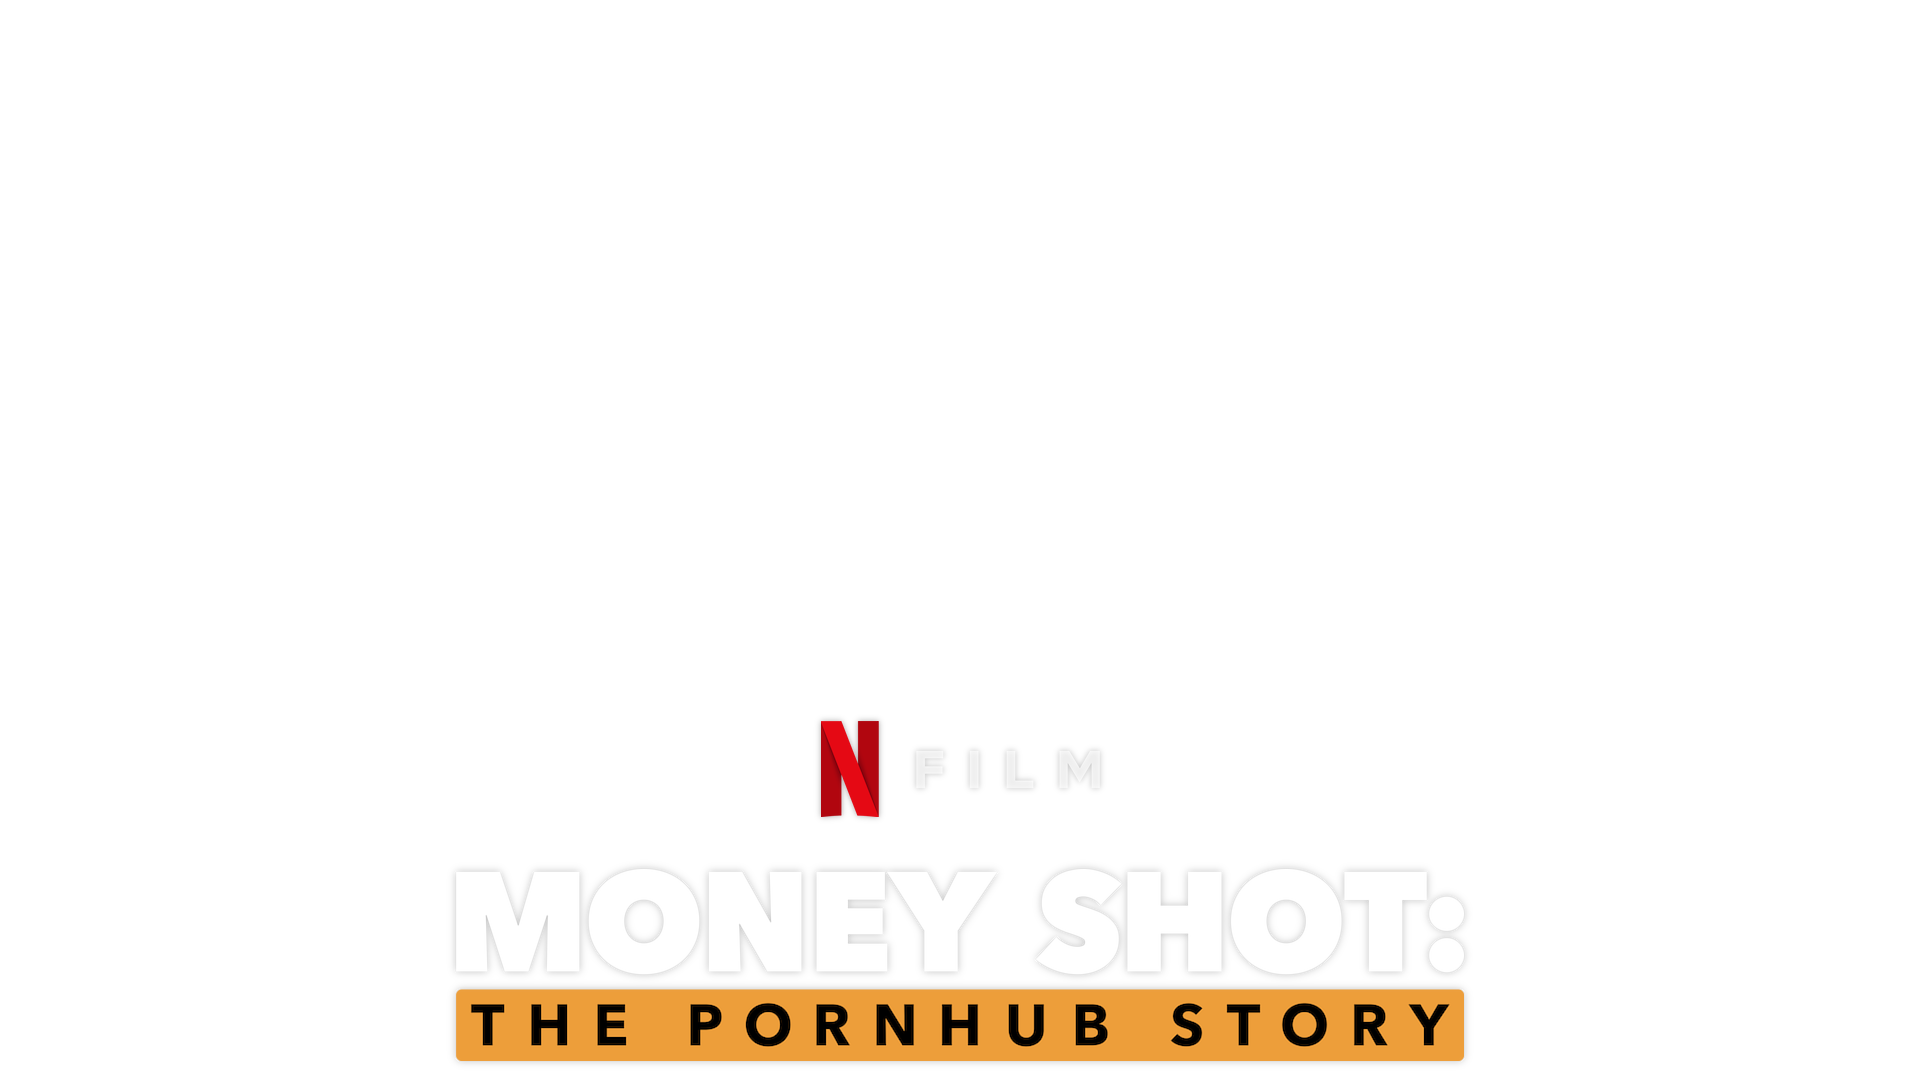 Pornatub Video - Money Shot: The Pornhub Story Cast, News, Videos and more